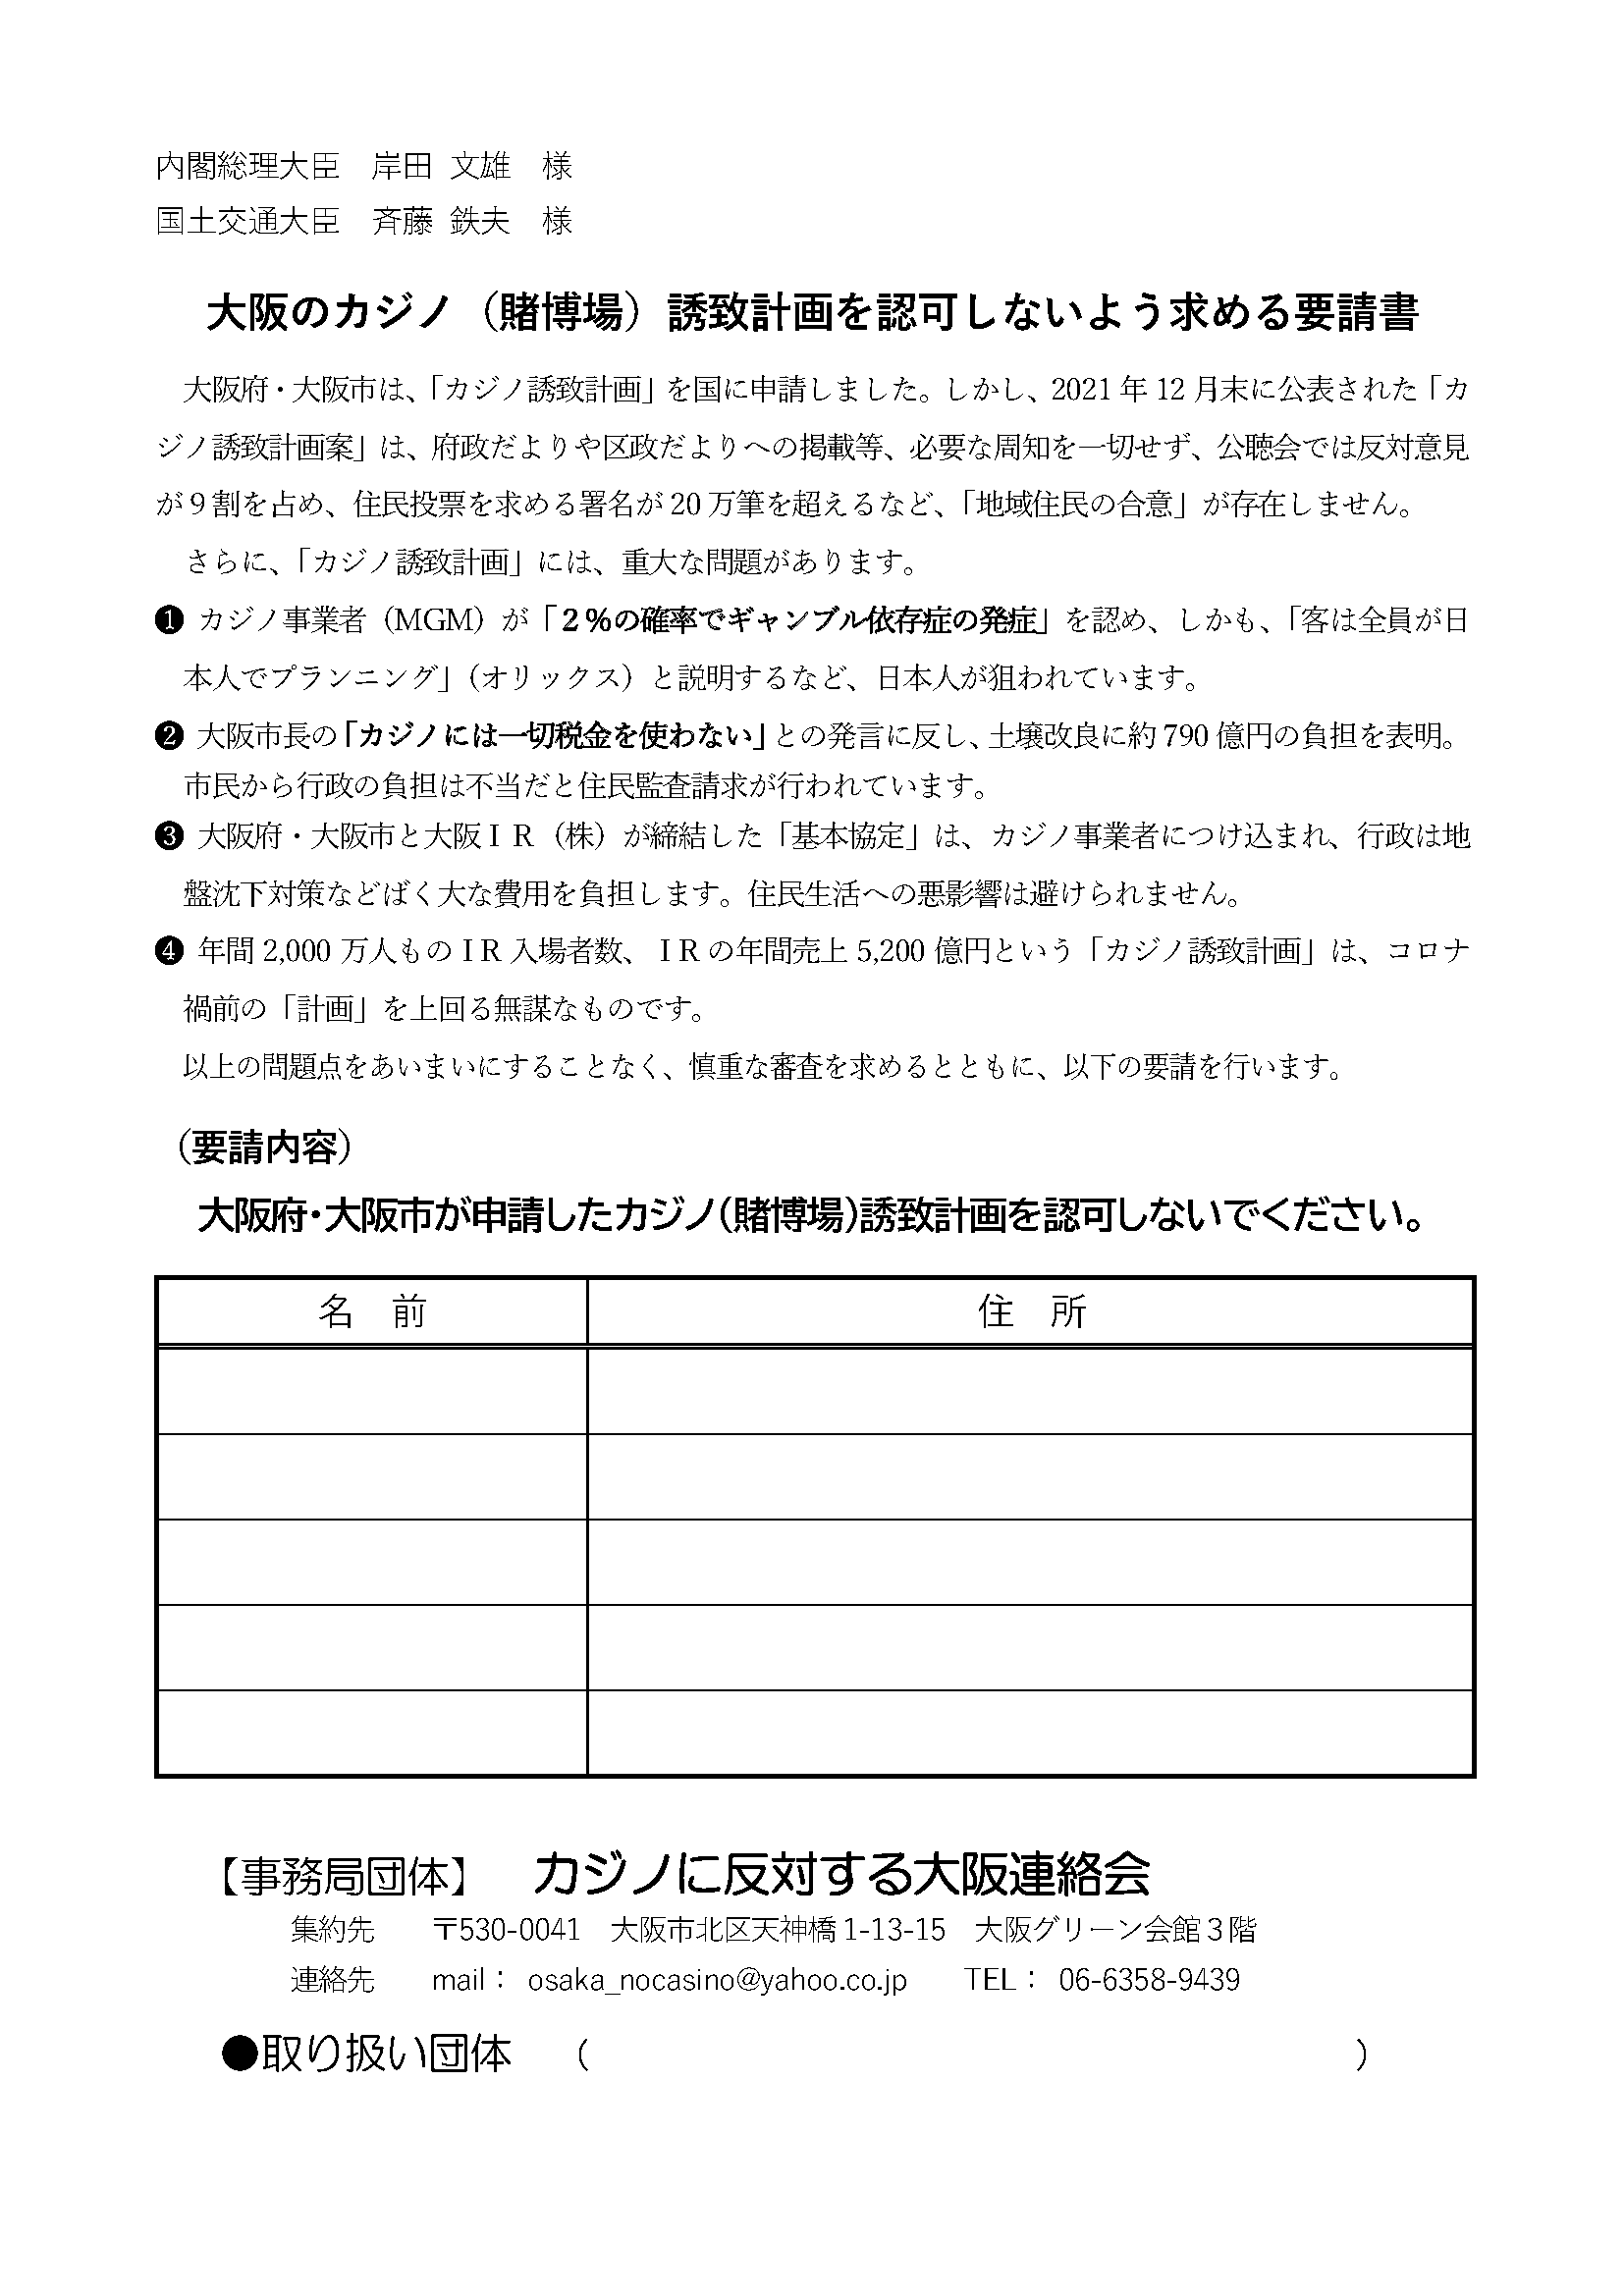 総理大臣と国土交通大臣に大阪のカジノ誘致計画を認可しないよう求める要請署名